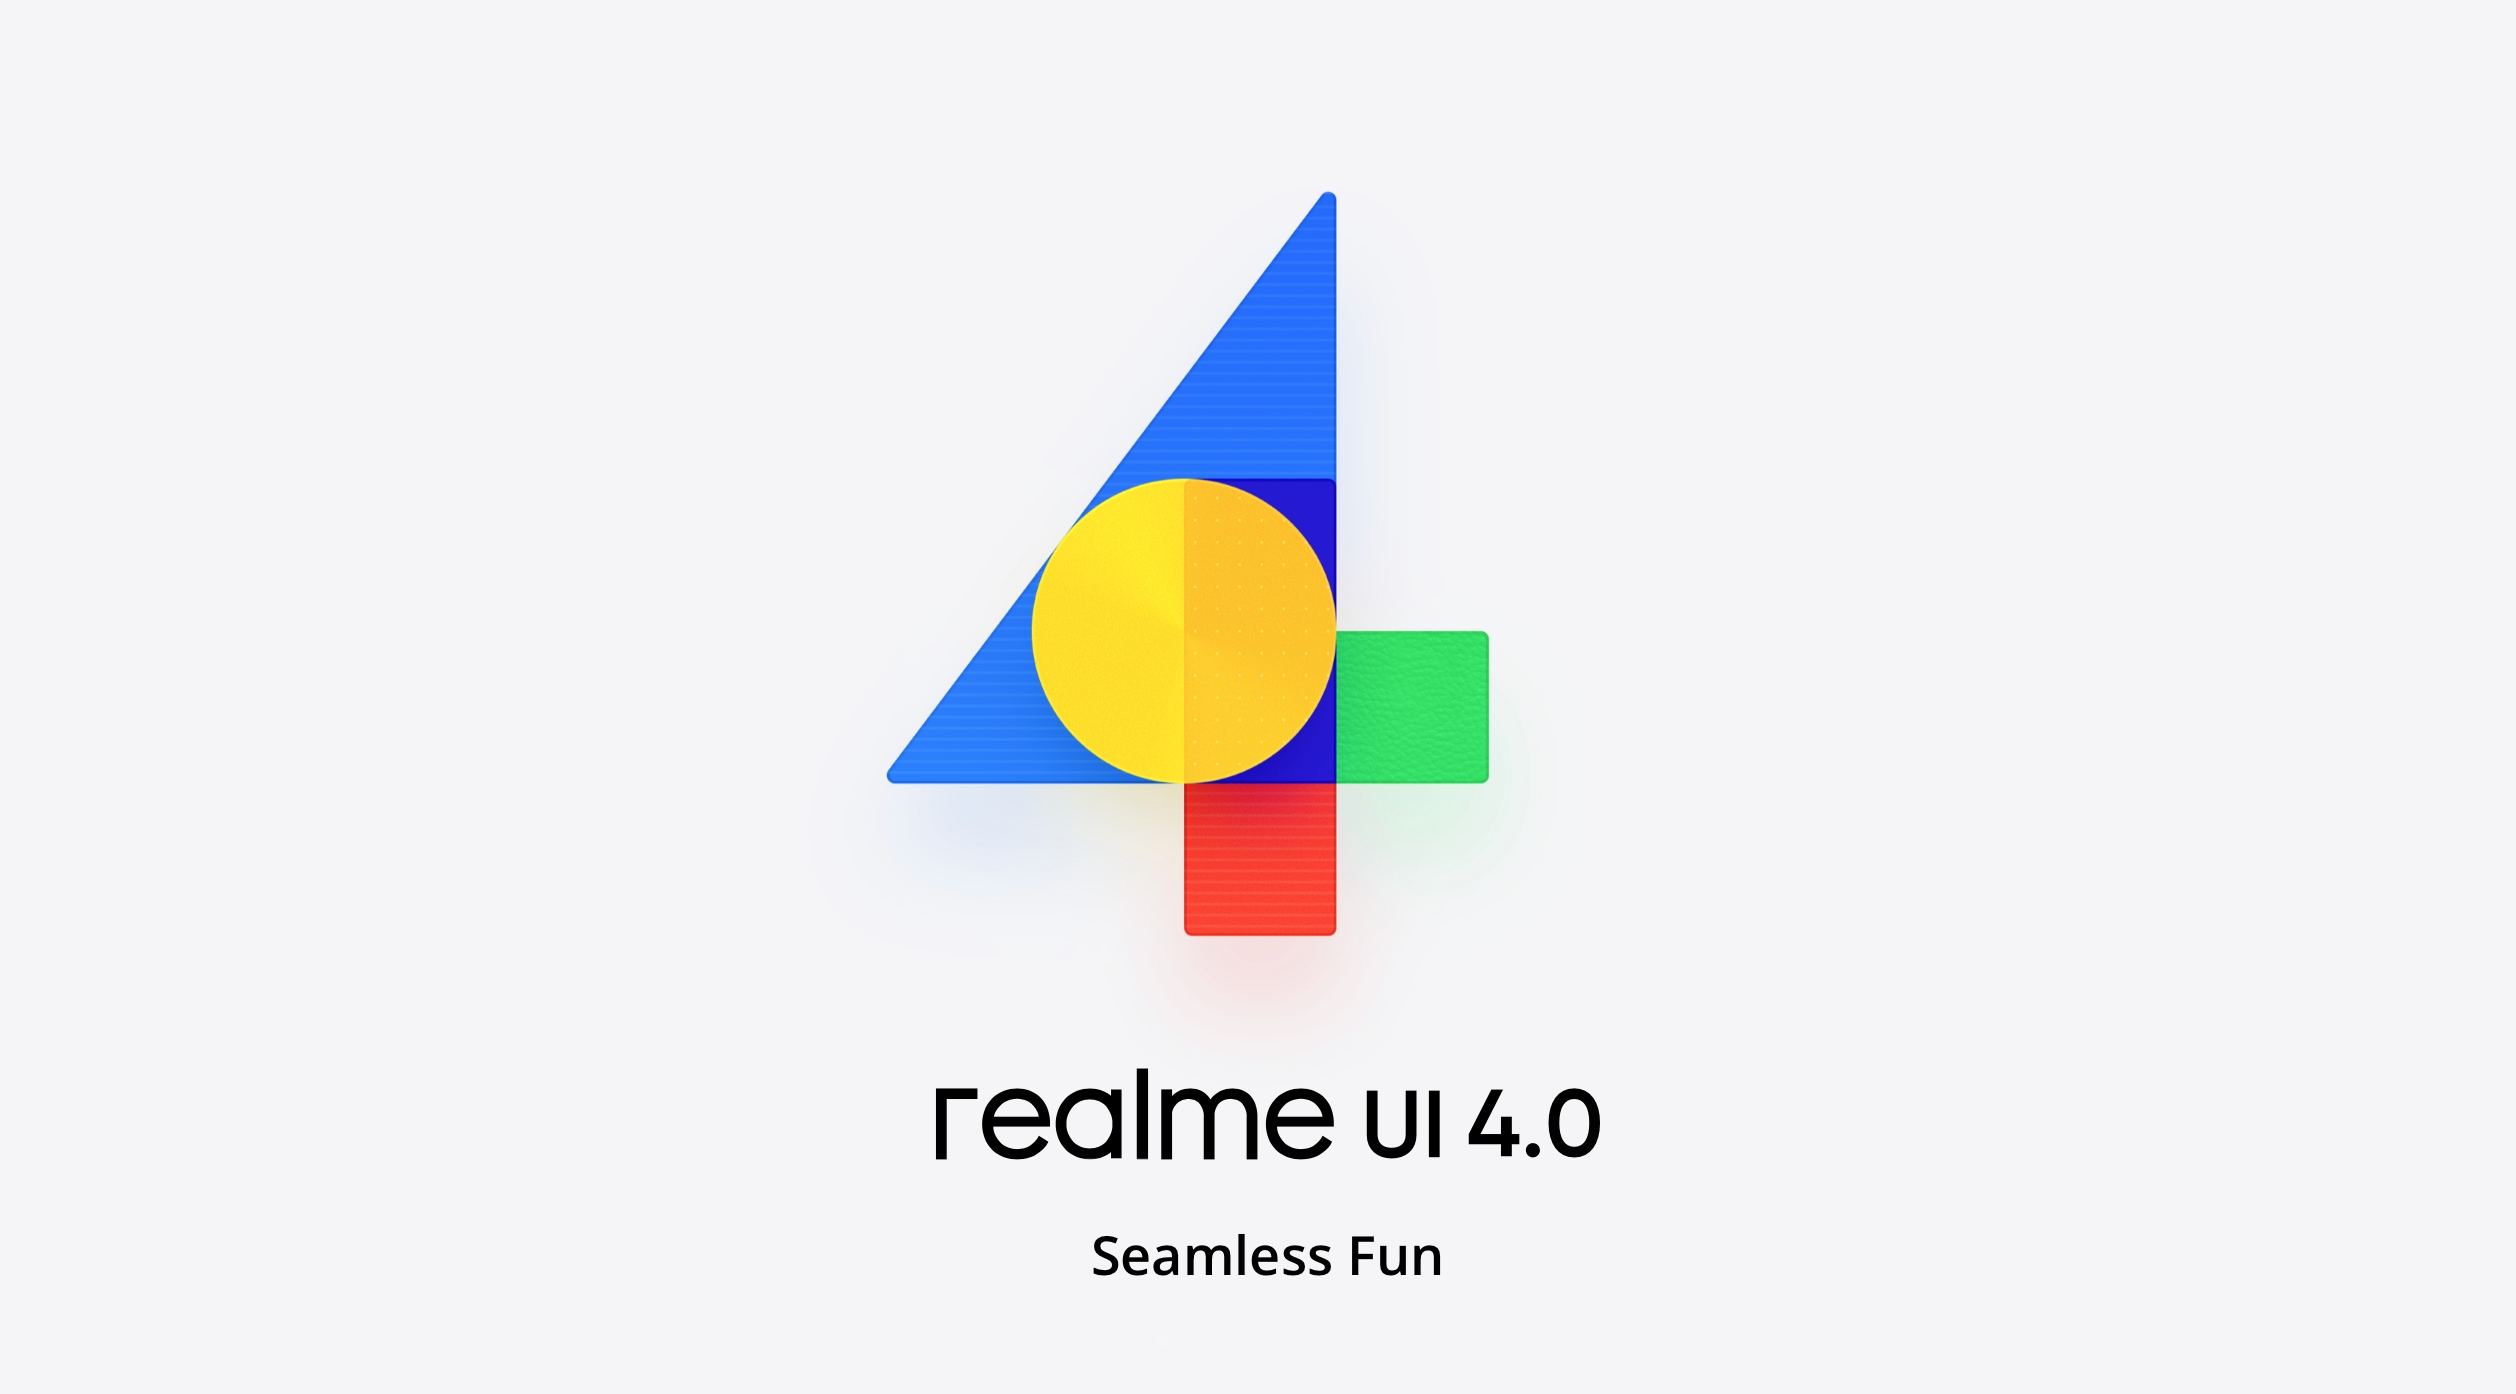 realme a dévoilé la coque realme UI 4.0 basée sur le système d'exploitation Android 13